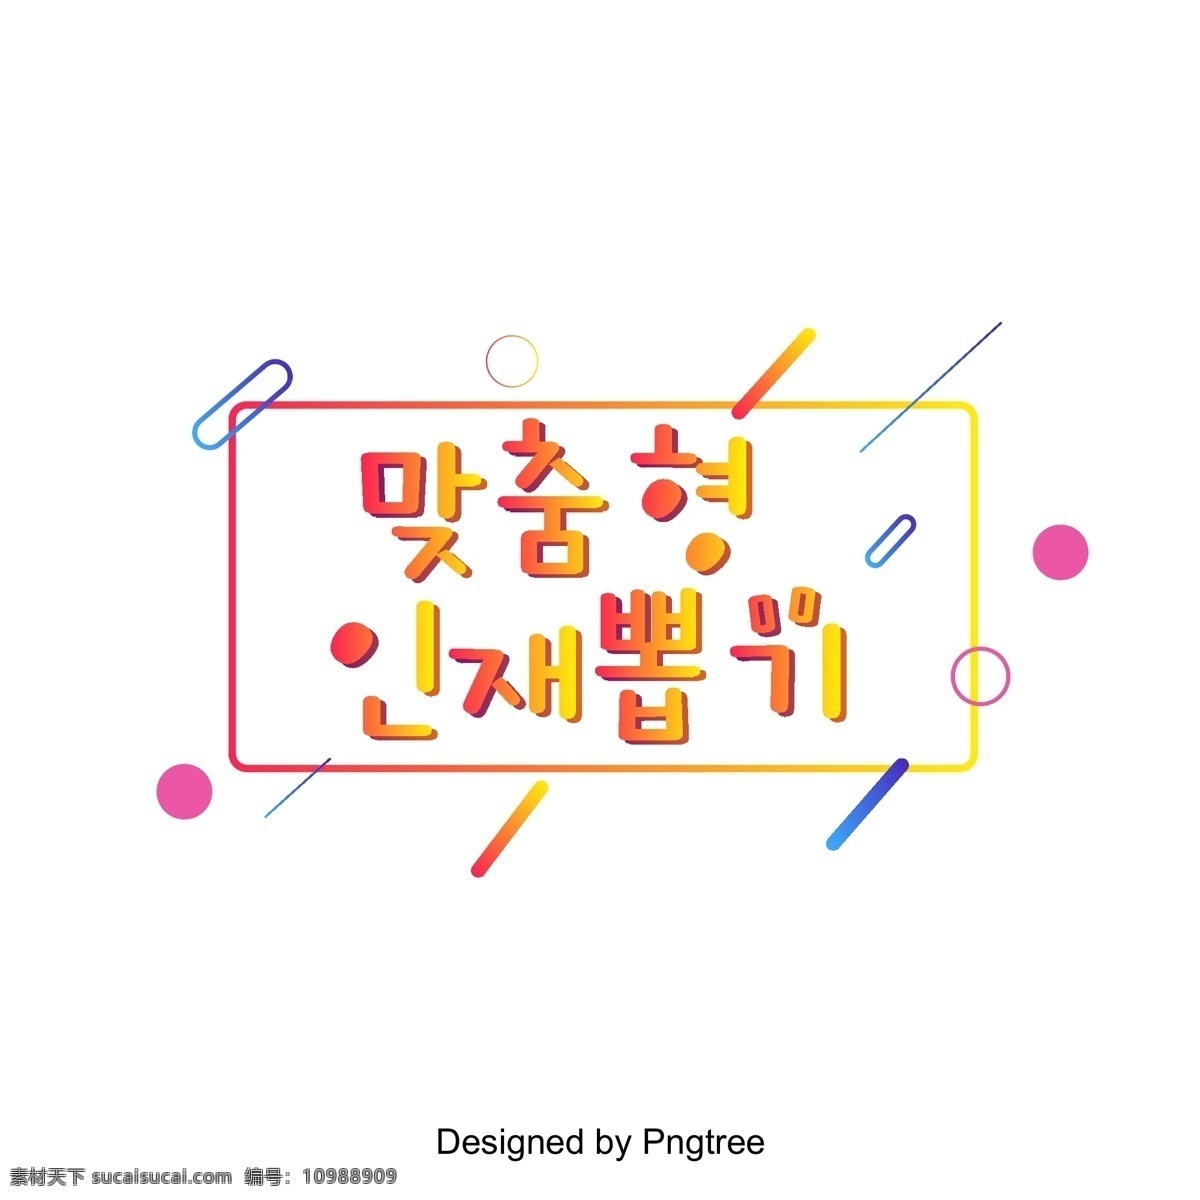 韩国 红 黄 逐渐 选择 合适 人员 现场 材料清单 黄色 红色 进步 帧 韩文 天赋 名单 几何 向量